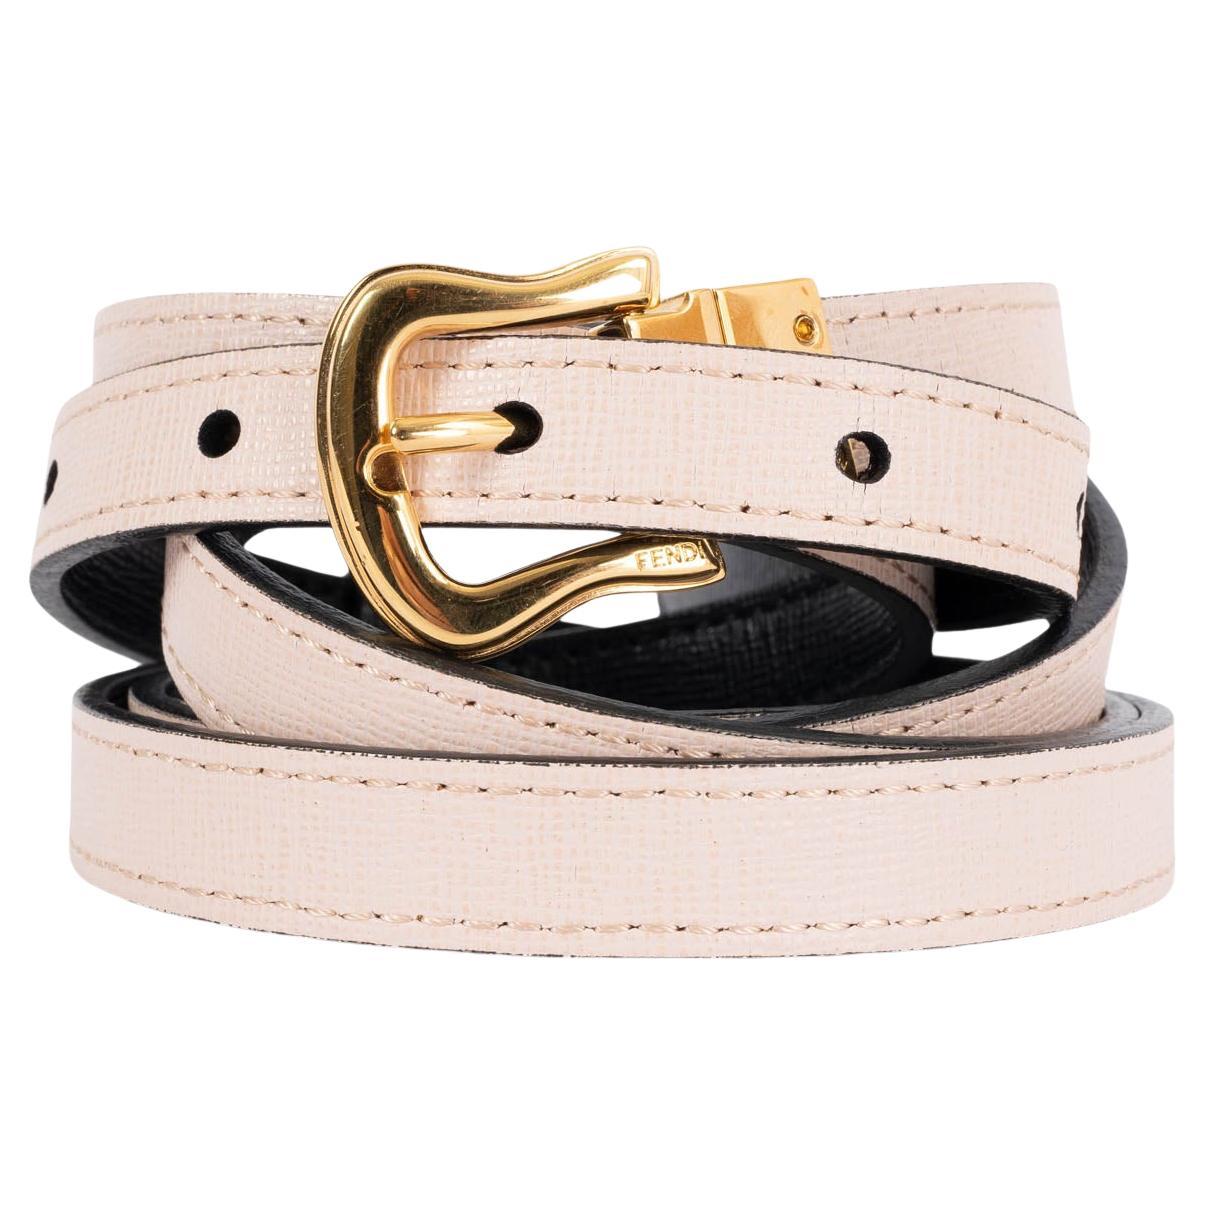 Where can you buy a Fendi belt?